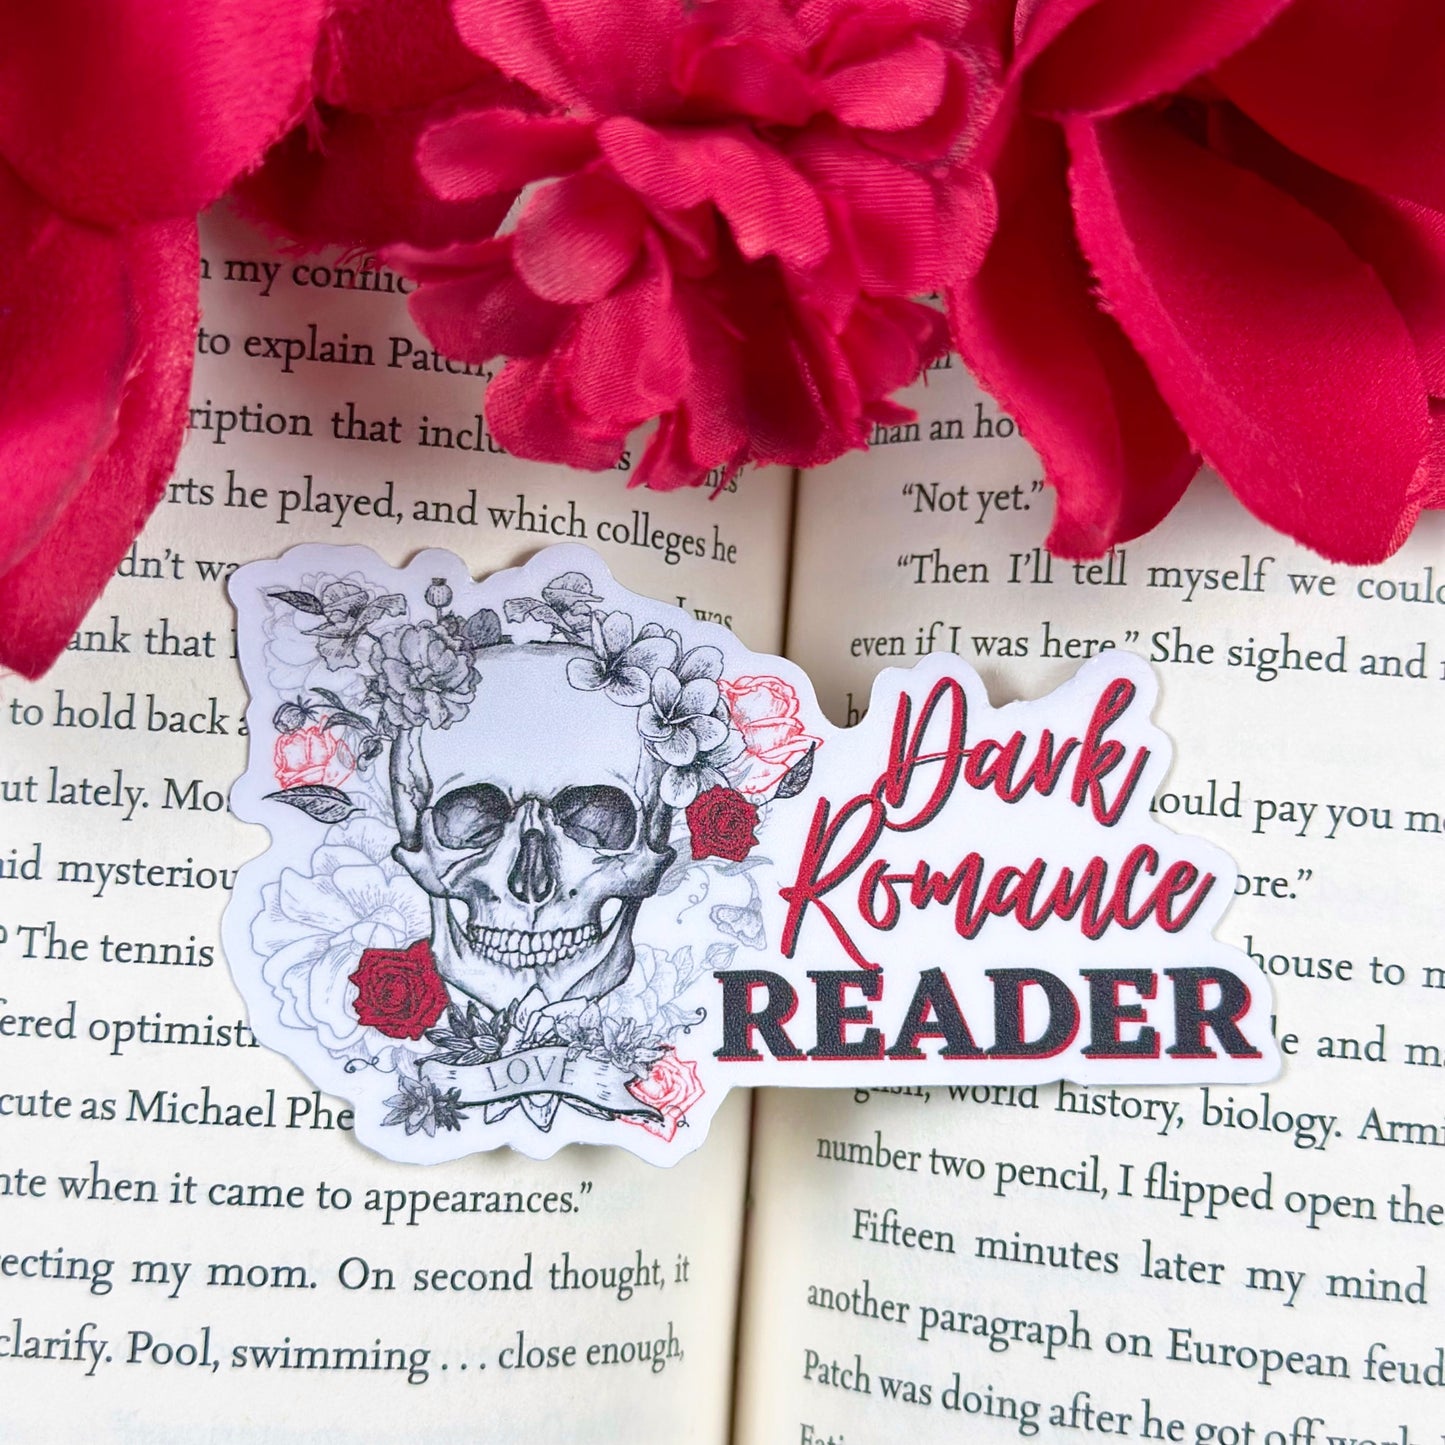 Dark Romance Reader Sticker